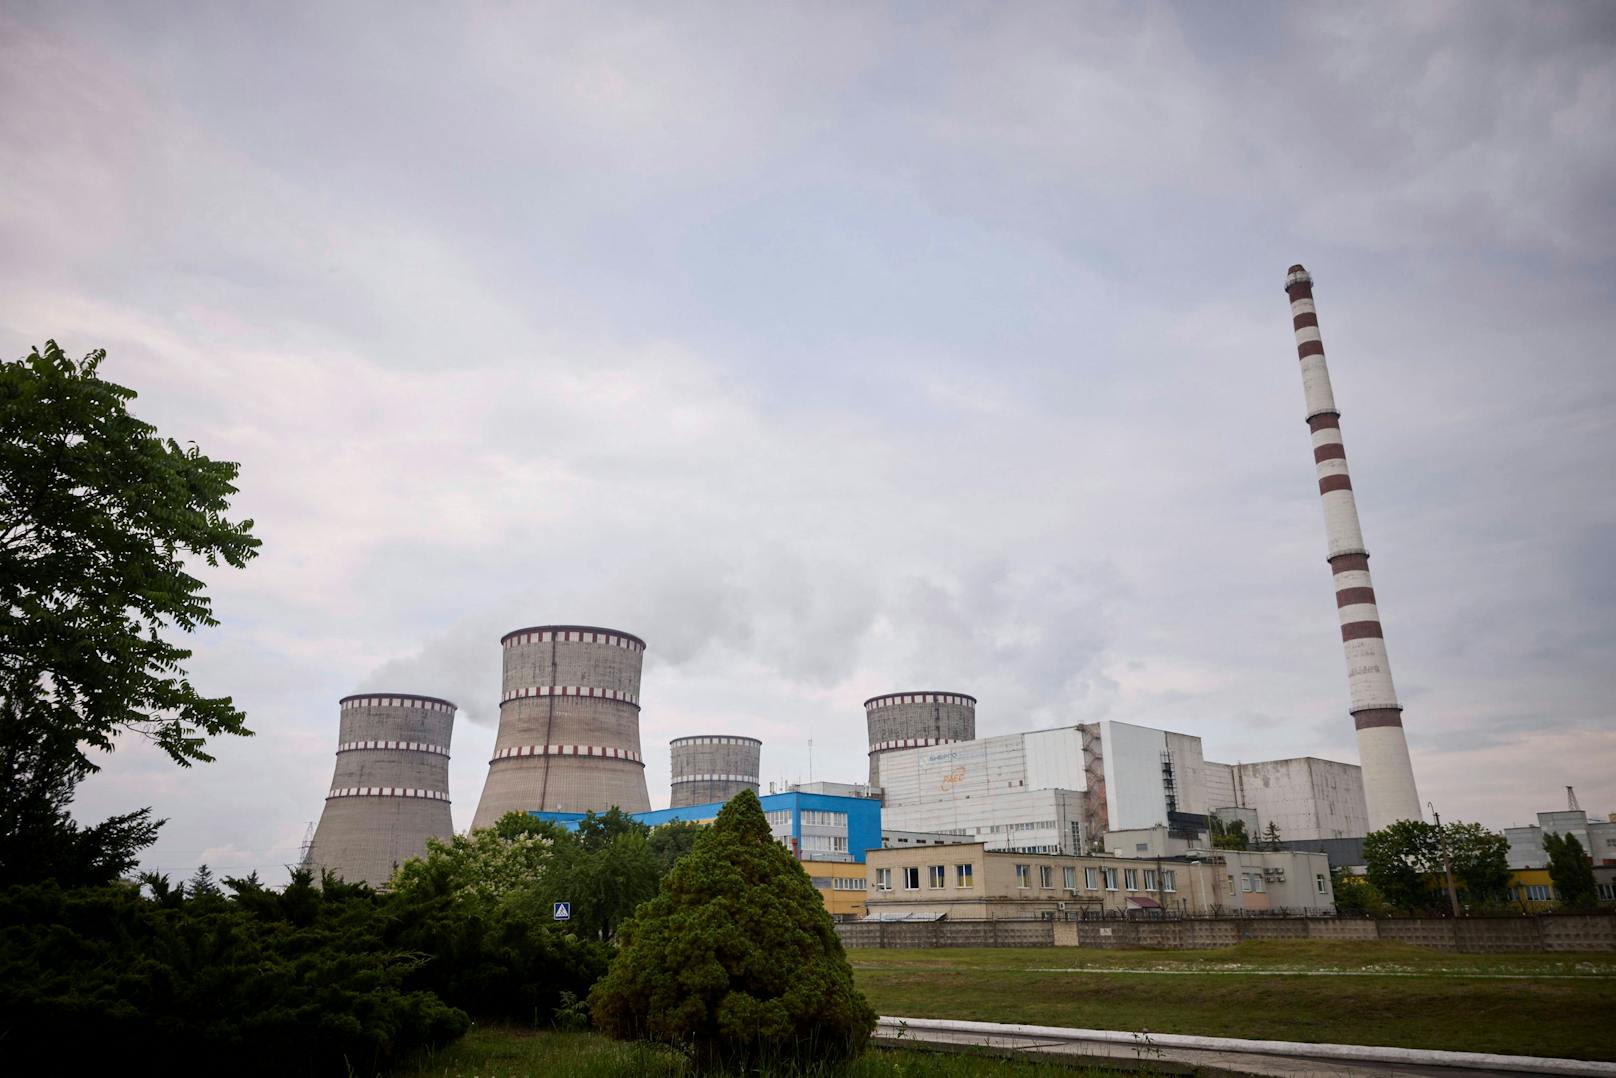 Russland will Reaktor Nummer Vier in den Warmzustand versetzen.